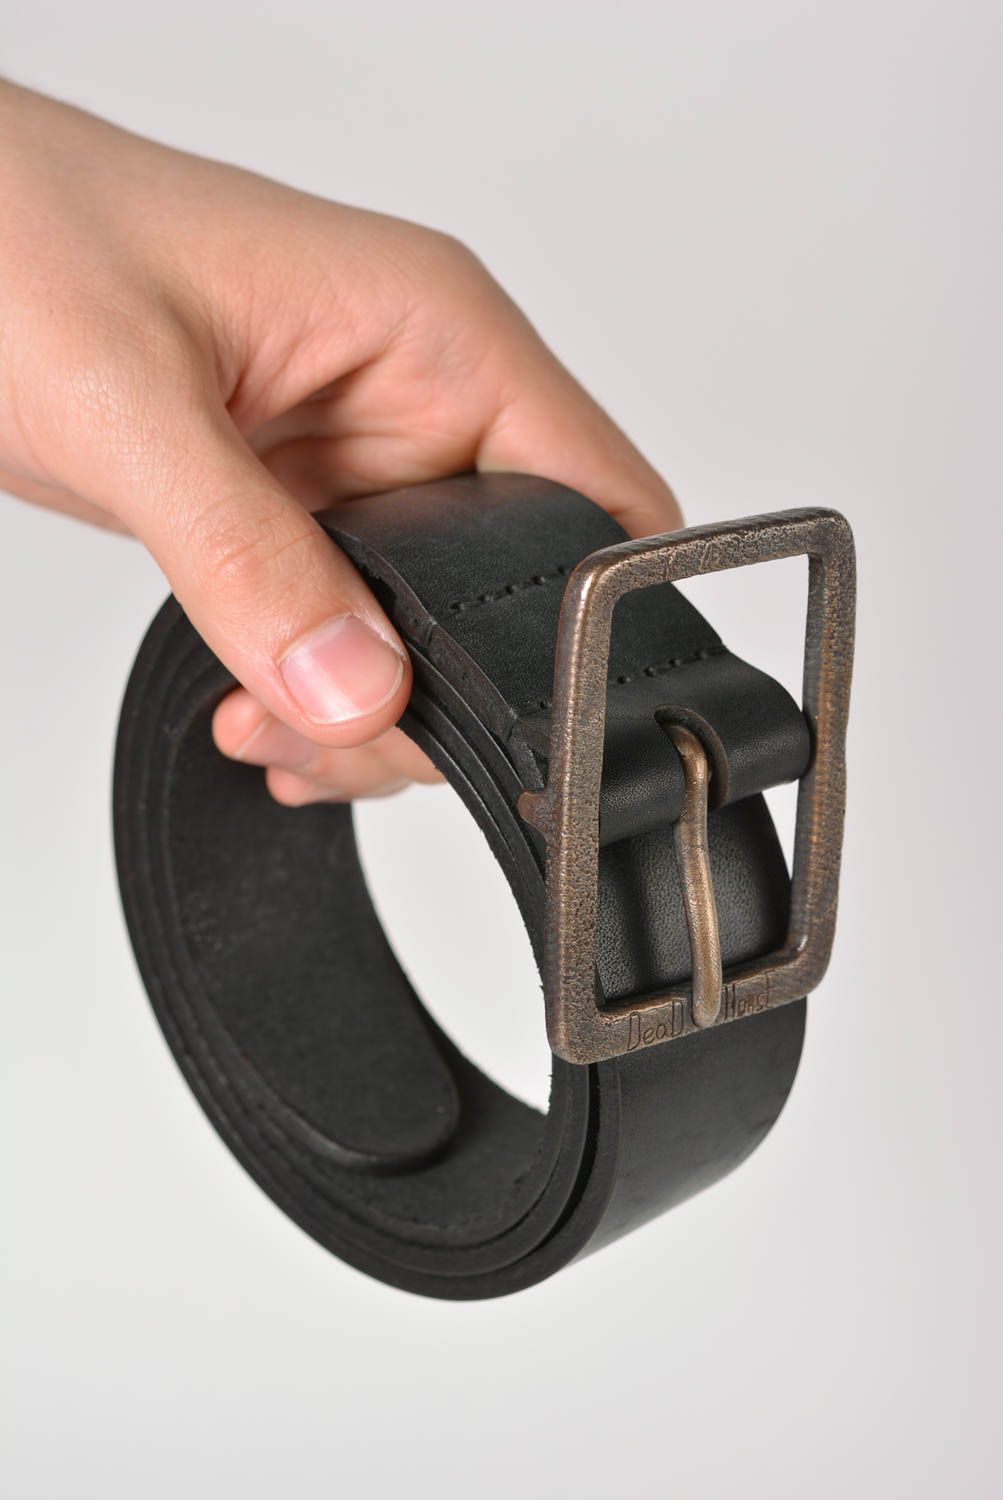 Cinturón de cuero artesanal ropa masculina estilosa original accesorio de moda foto 3